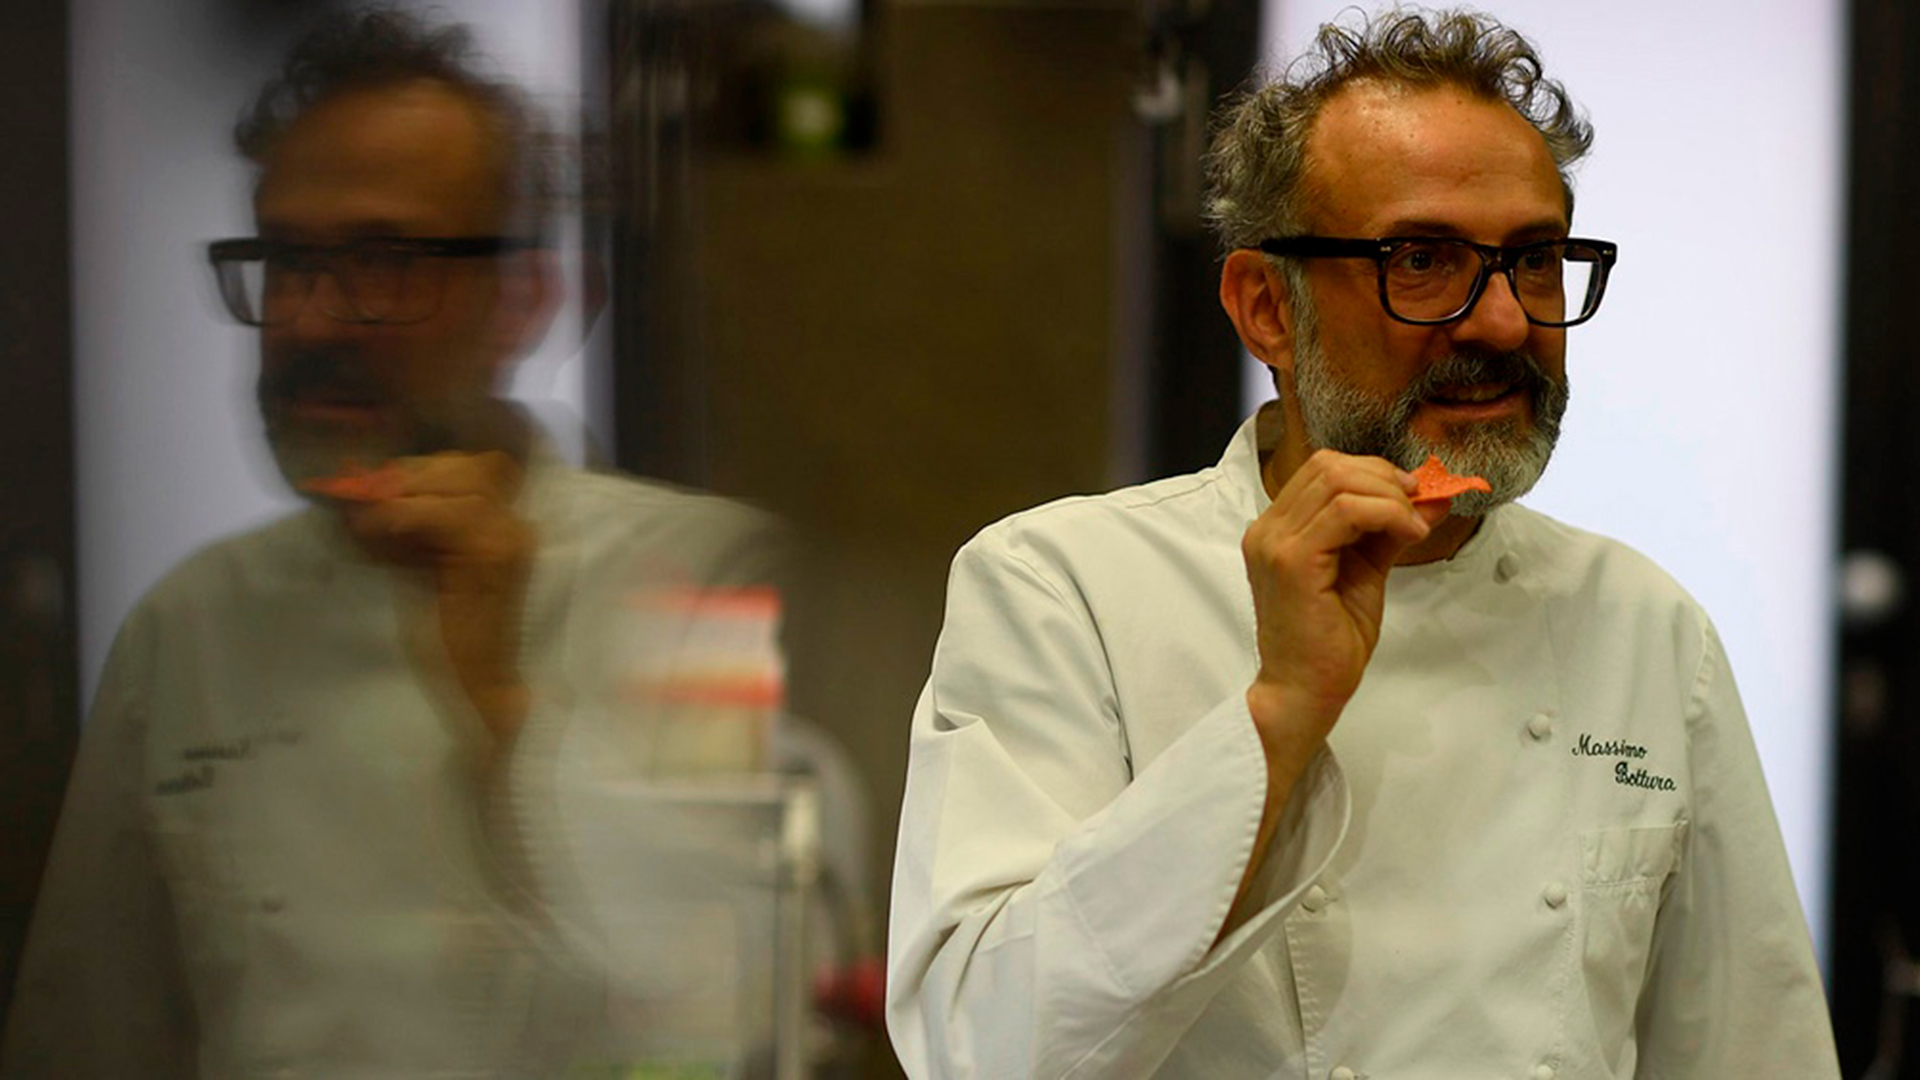 El chef Massimo Bottura encabeza un evento gastronómico de lujo: cena de 6 platos por USD 6.000 en Once Upon a Kitchen